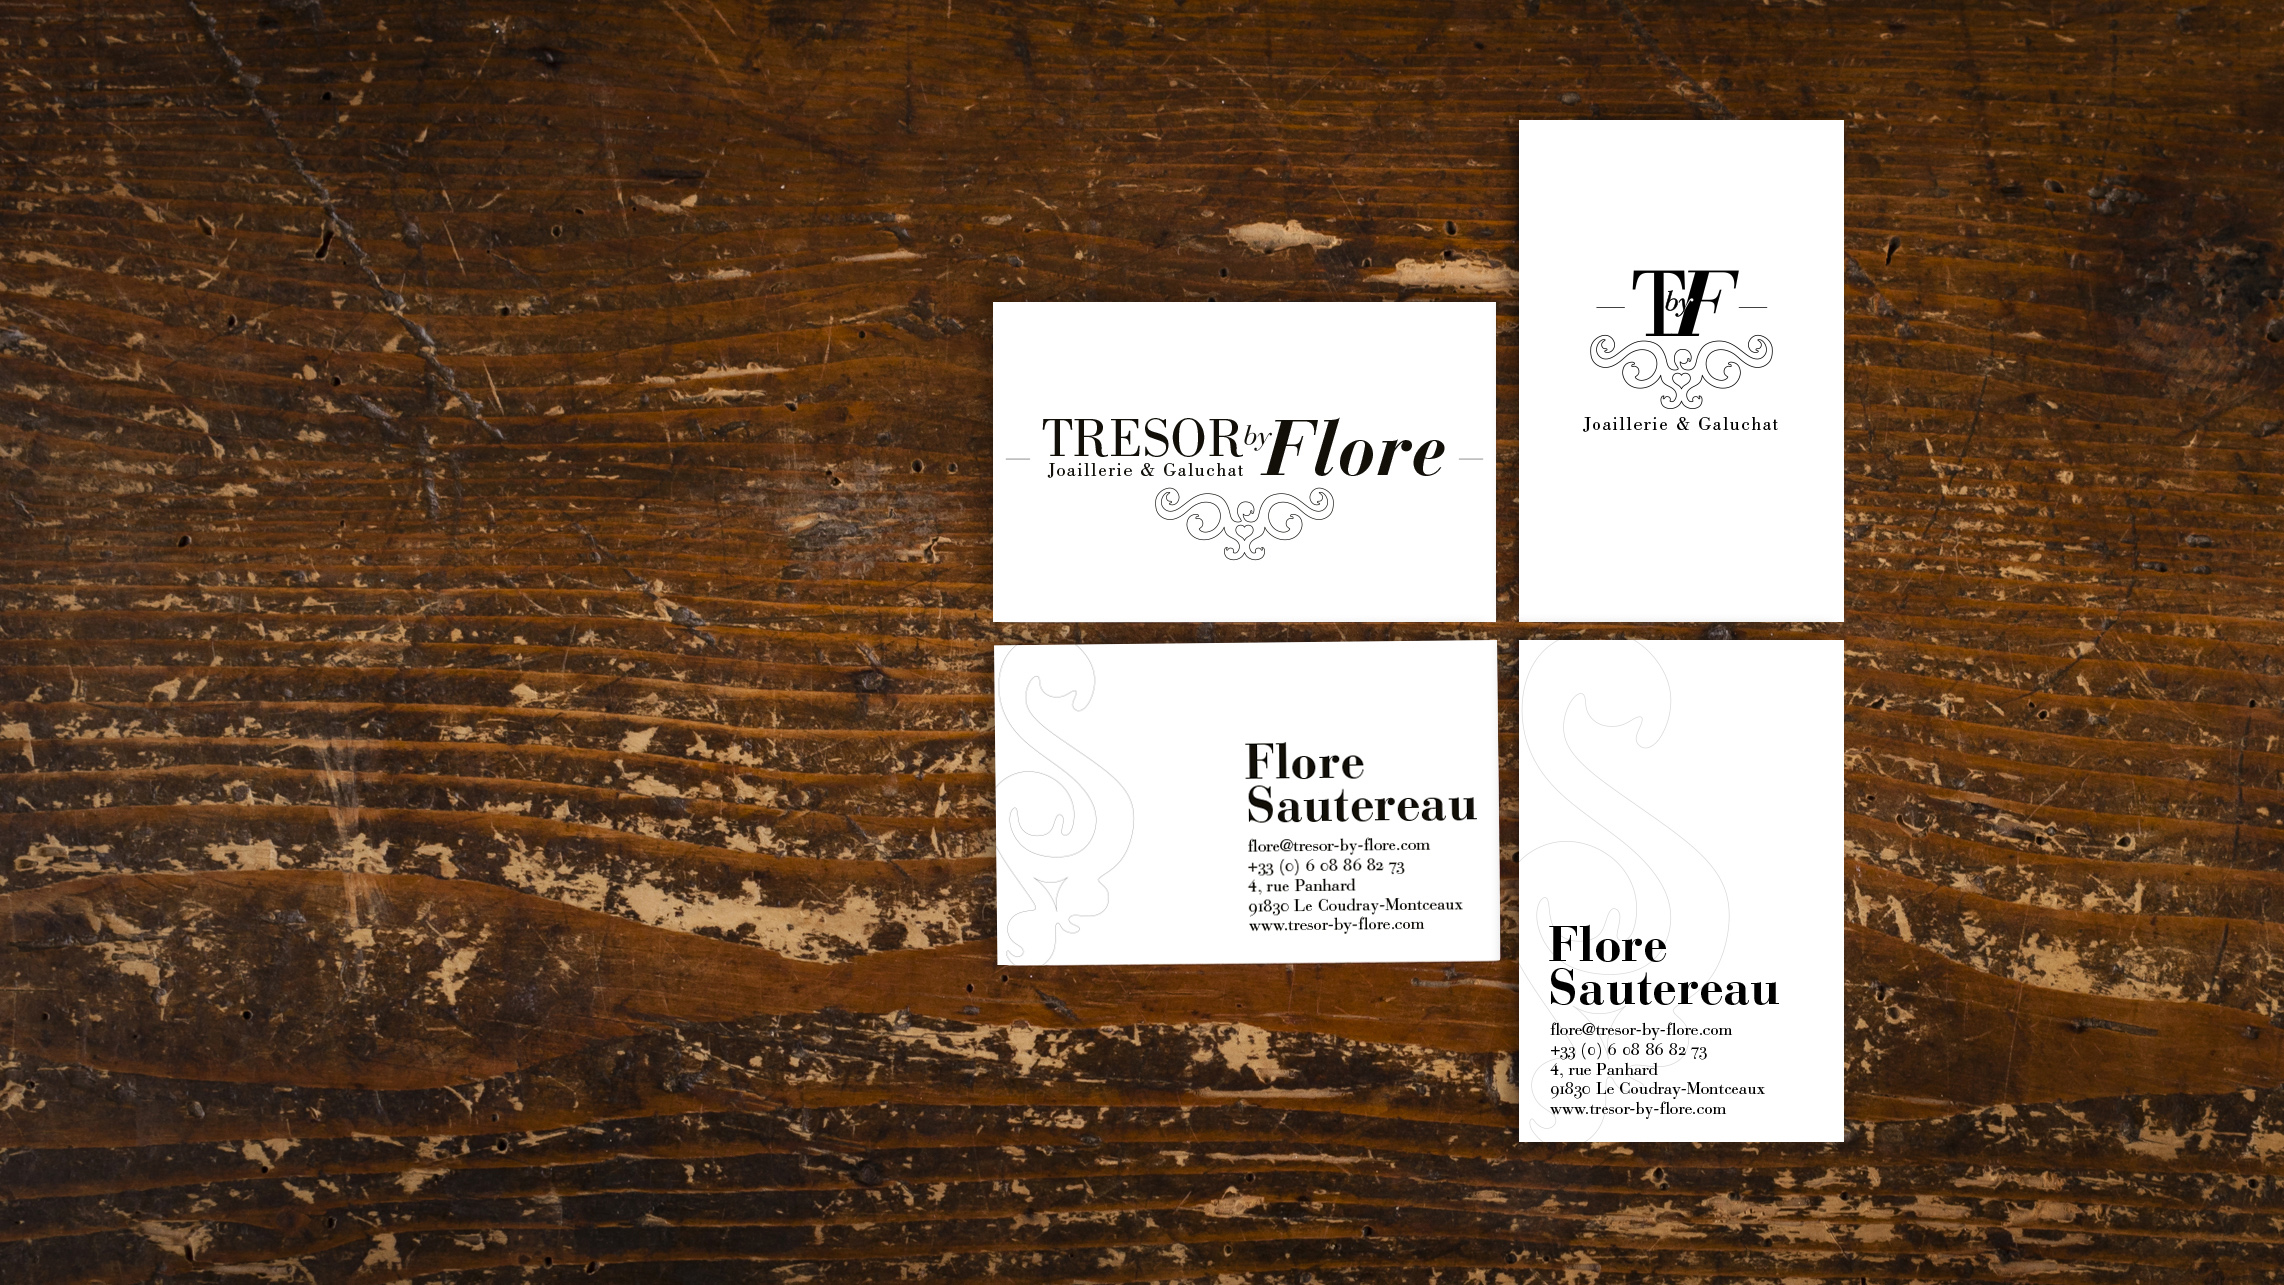 Tresor by Flore cartes de visite